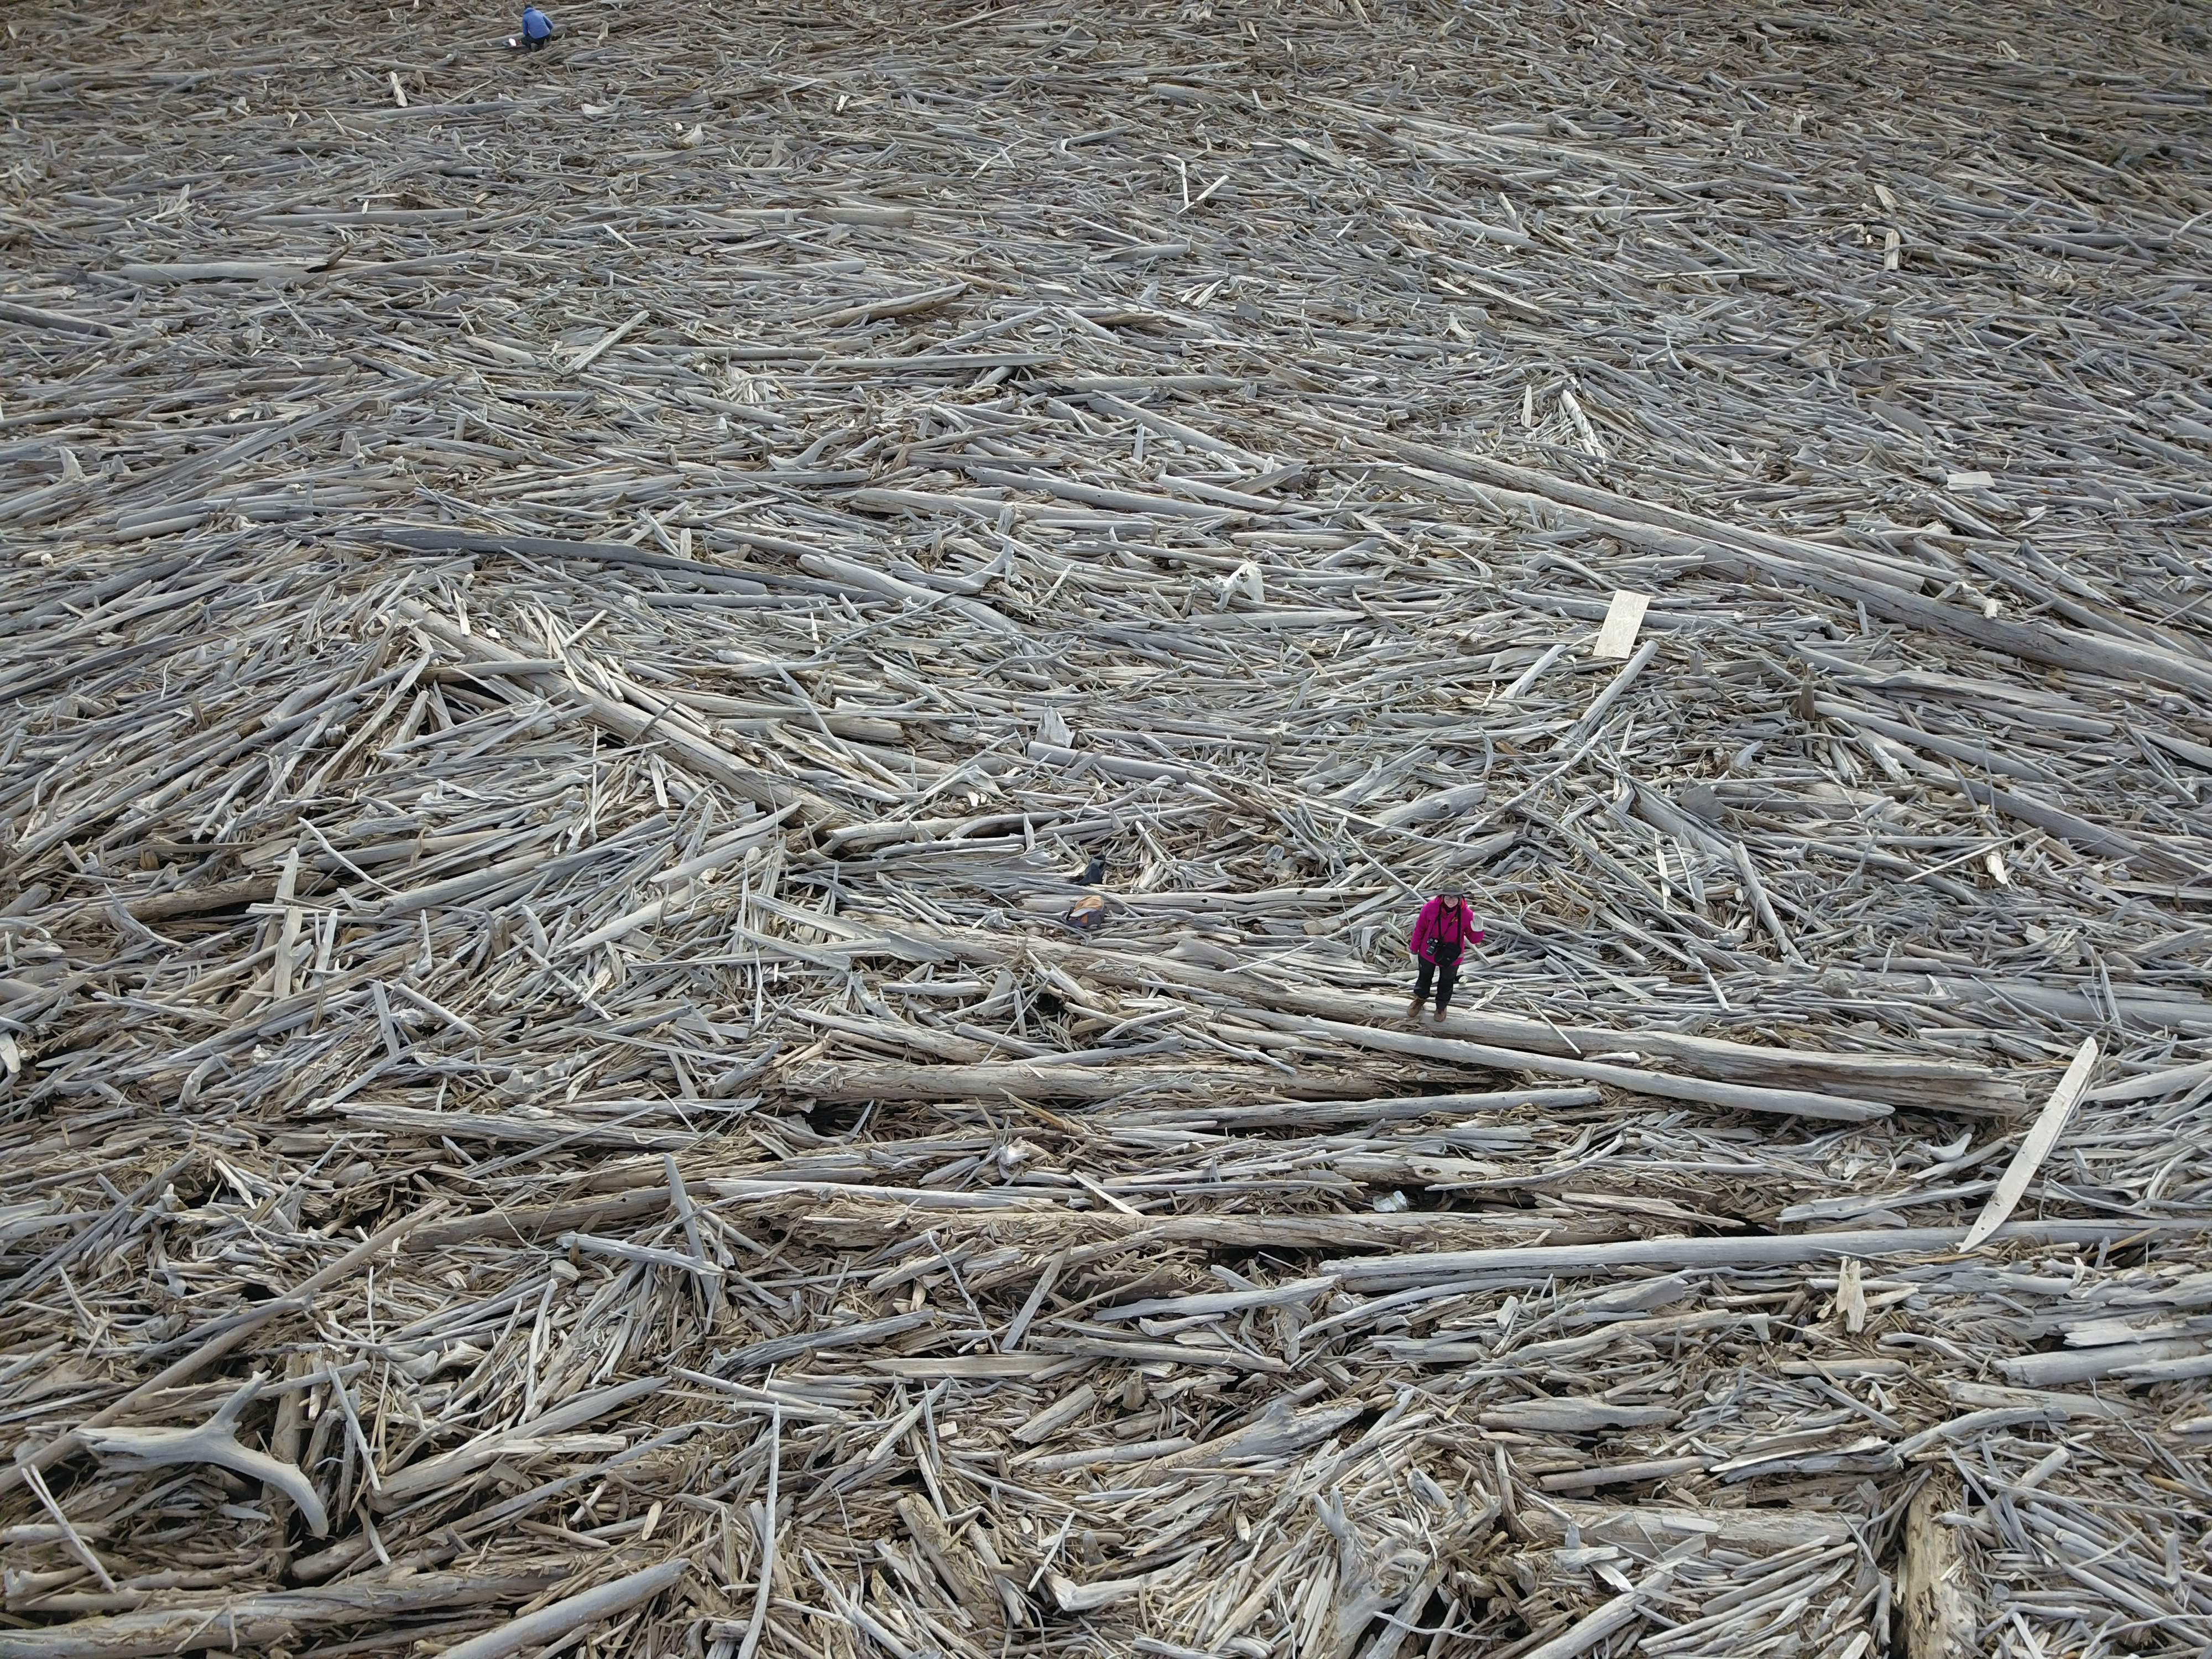 Una gigantesca pila de troncos grande como Manhattan atrapa millones de toneladas de carbono y está en peligro